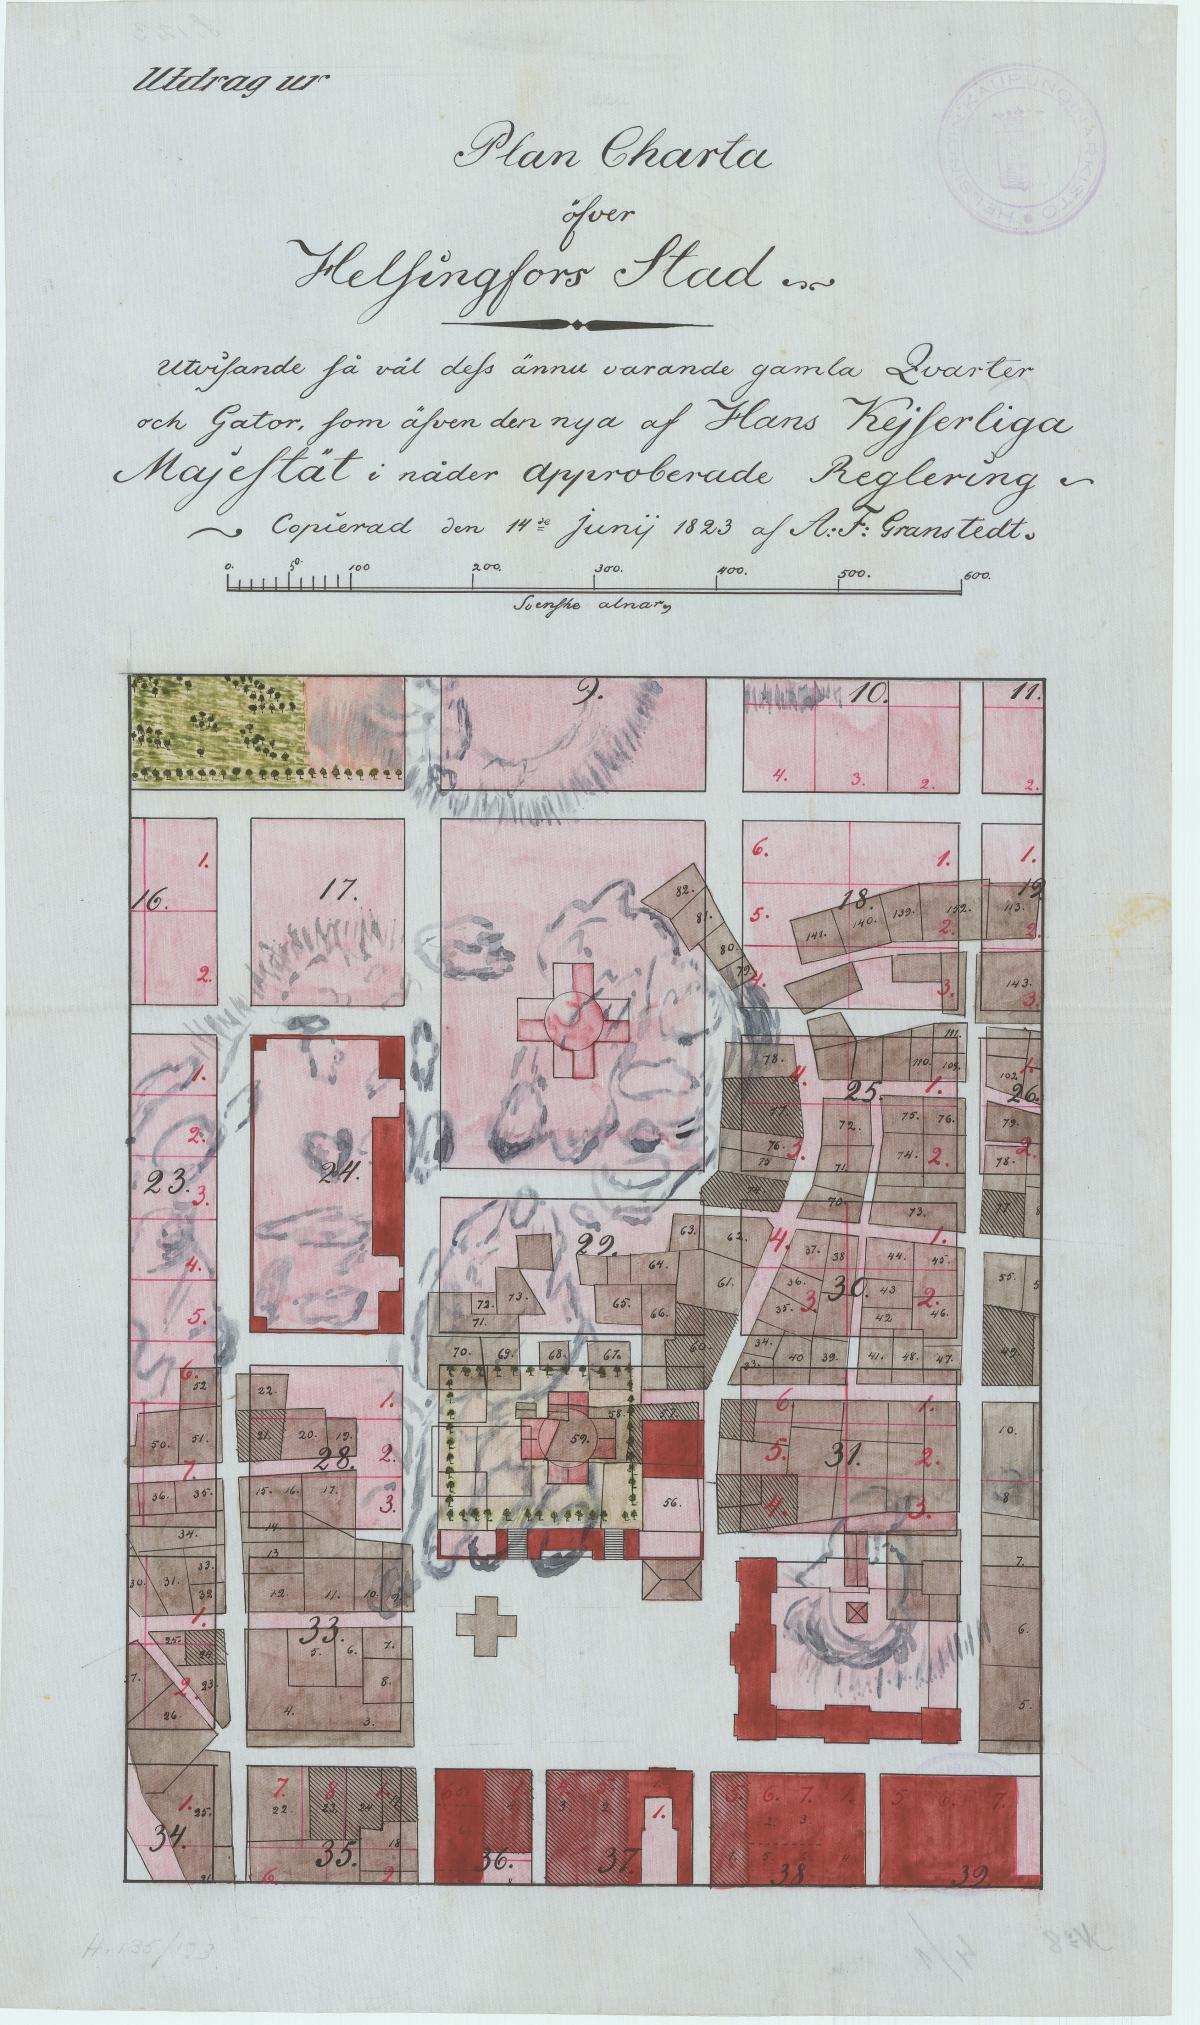 Kruununhaan kartta vuodelta 1820. Vanhojen teiden ja kortteleiden päälle on piirretty vaaleanpunaisella uuteen ruutukaavaan suunnitellut väljemmät kadut ja korttelit. Uuden asemakaavan mukaan jo rakennetut alueet on merkitty tummanpunaisella.